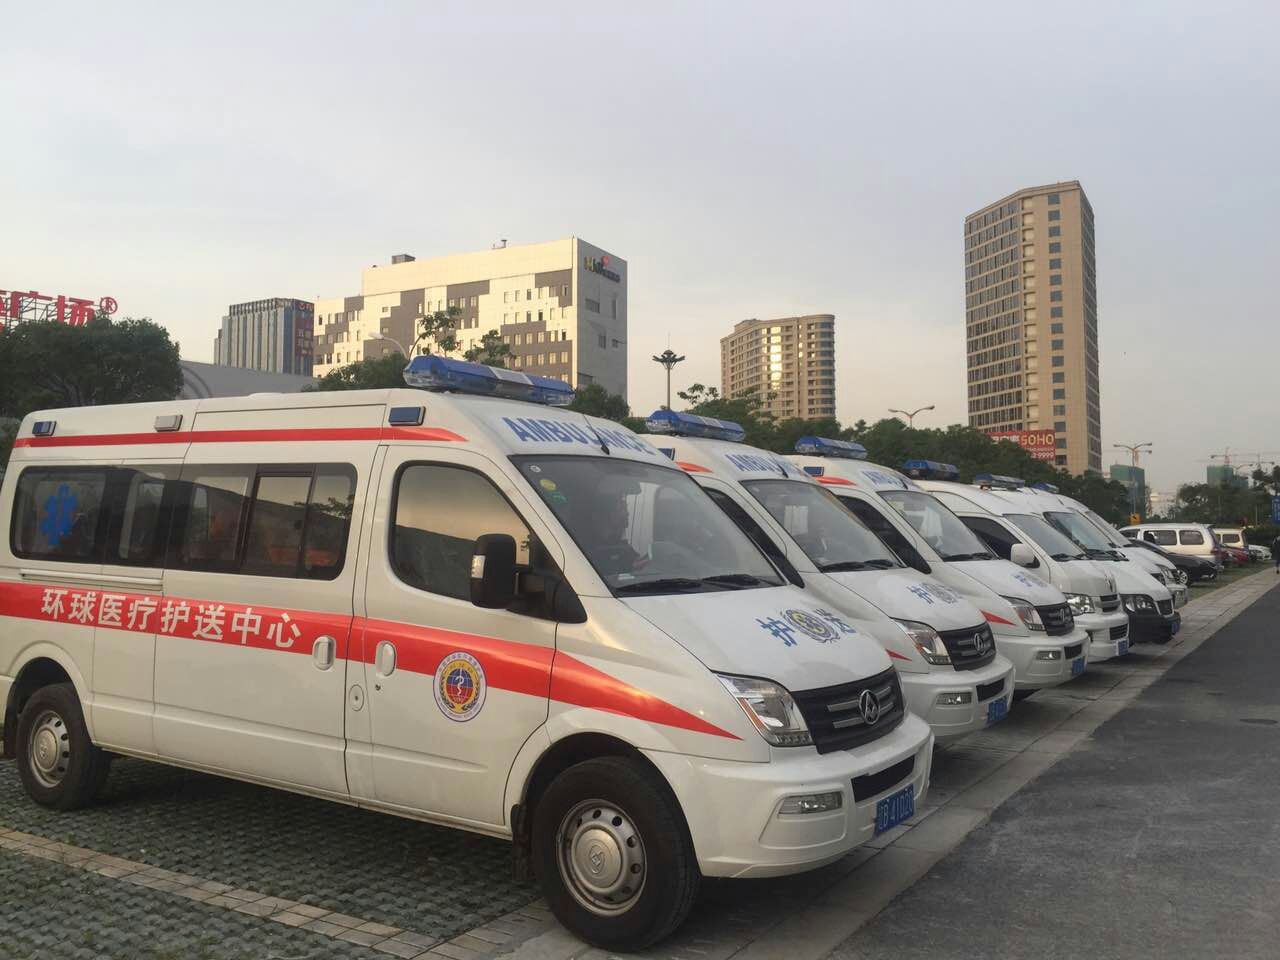 供应上海正规救护车出租 上海急救车转接病人电4006025120 上海正规救护车出租价格图片